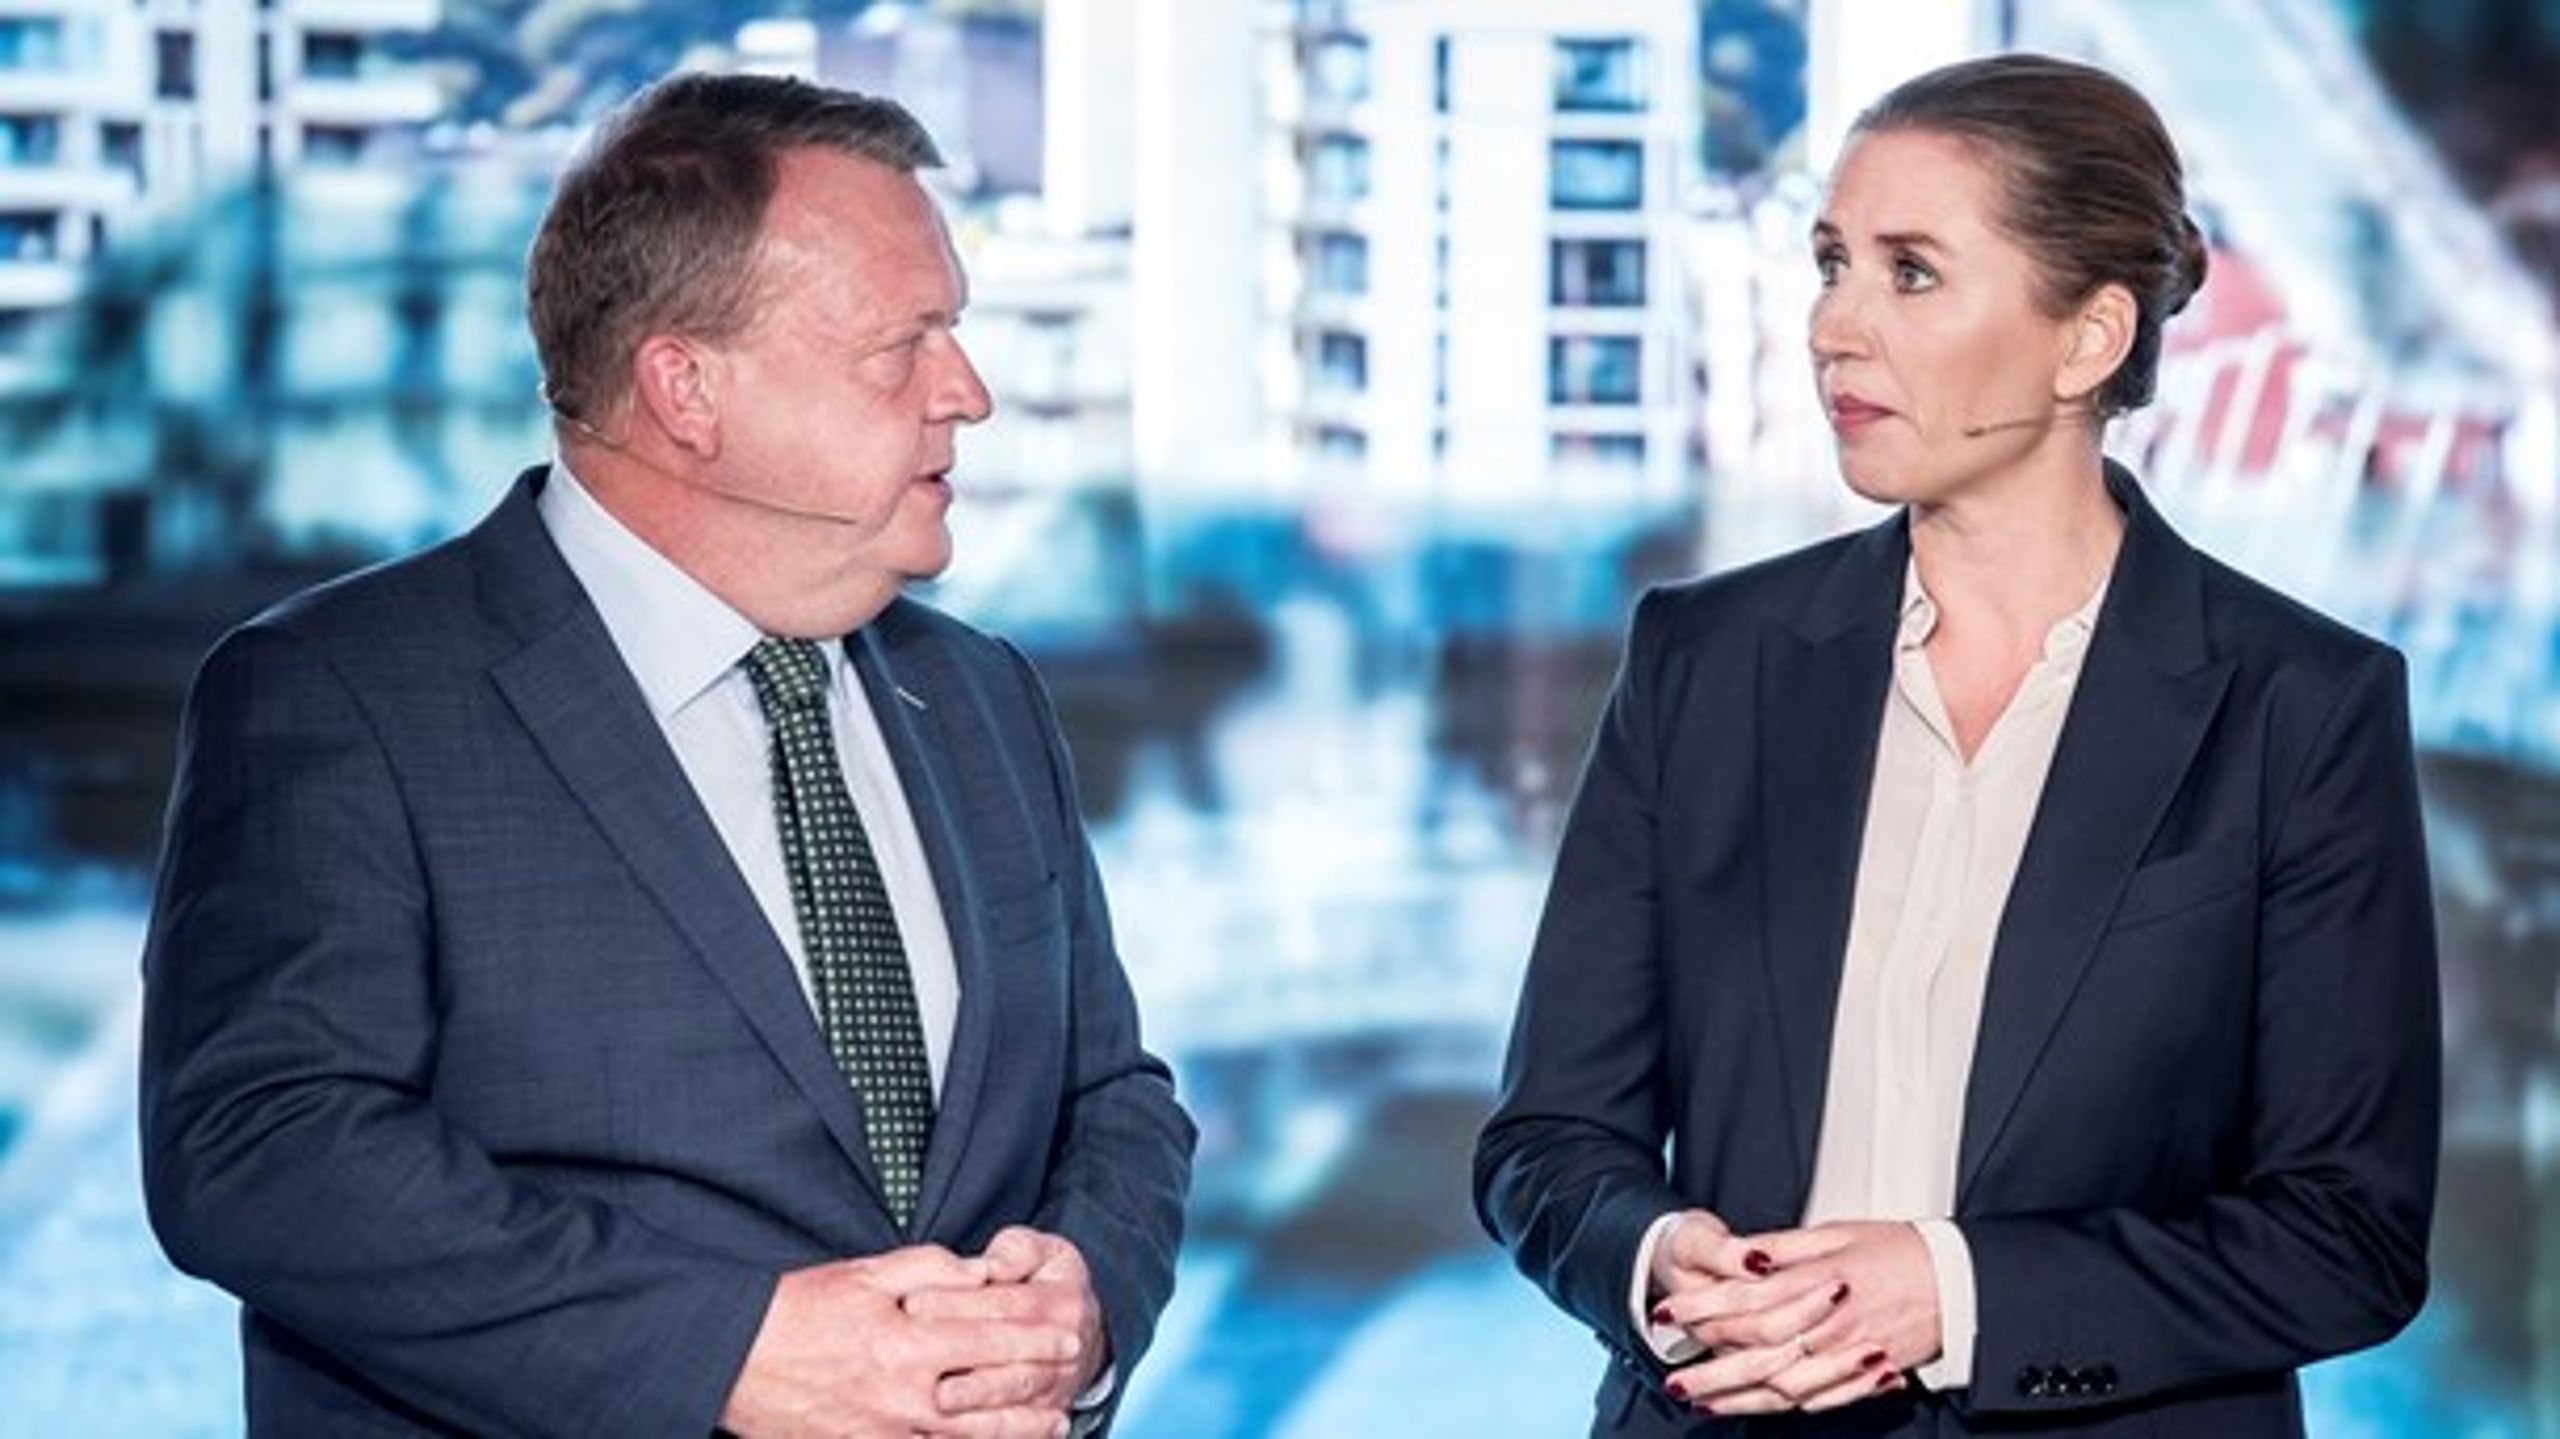 Søndag mødtes Lars Løkke Rasmussen (V) og Mette Frederiksen (S) i den første duel siden valgets udskrivelse. Det skete på TV 2's valgfolkemøde.